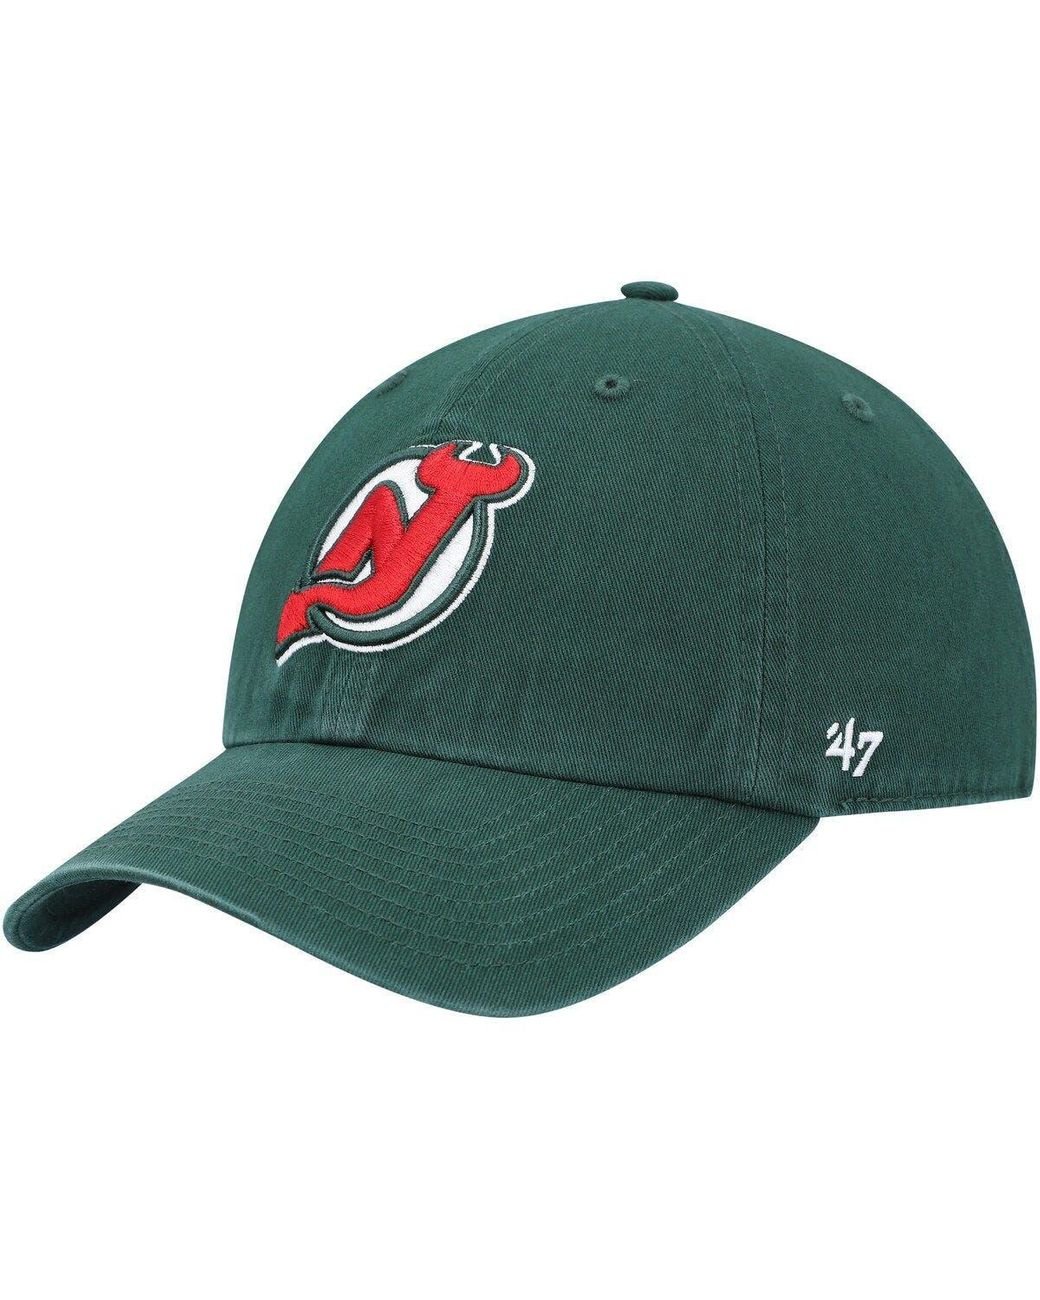 NHL New Jersey Devils Sports Resort Adjustable Hat